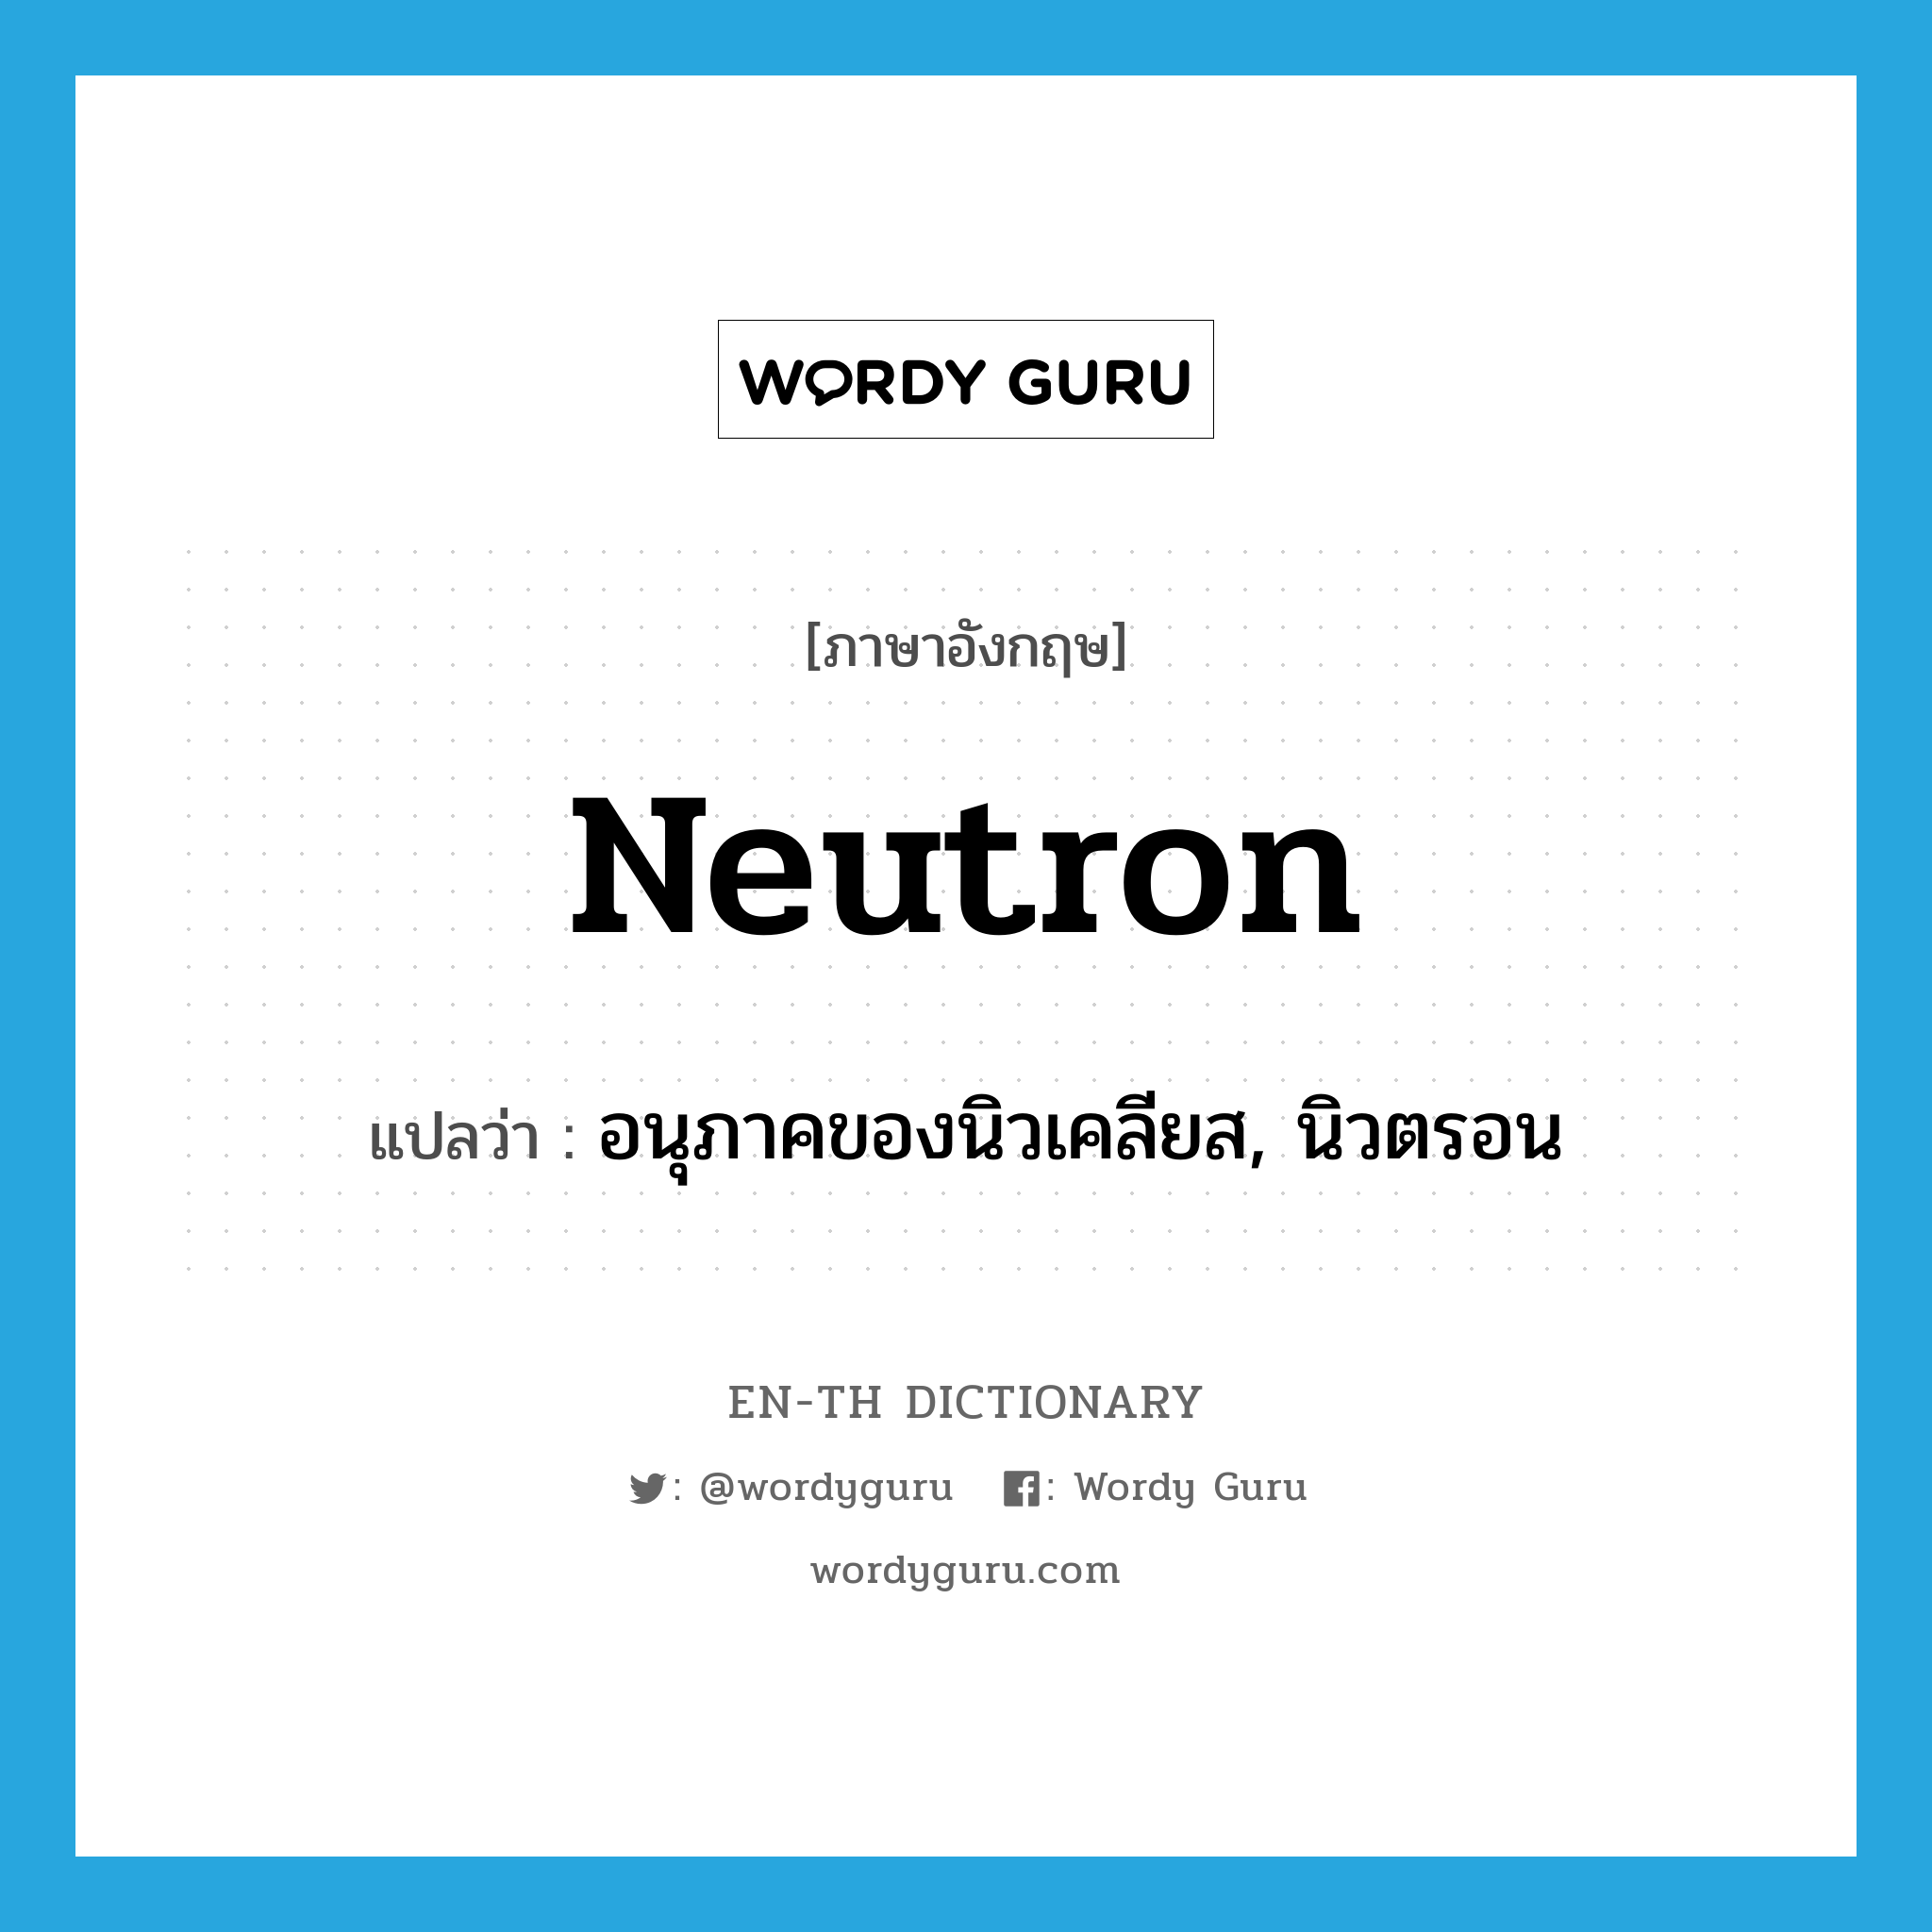 อนุภาคของนิวเคลียส, นิวตรอน ภาษาอังกฤษ?, คำศัพท์ภาษาอังกฤษ อนุภาคของนิวเคลียส, นิวตรอน แปลว่า neutron ประเภท N หมวด N